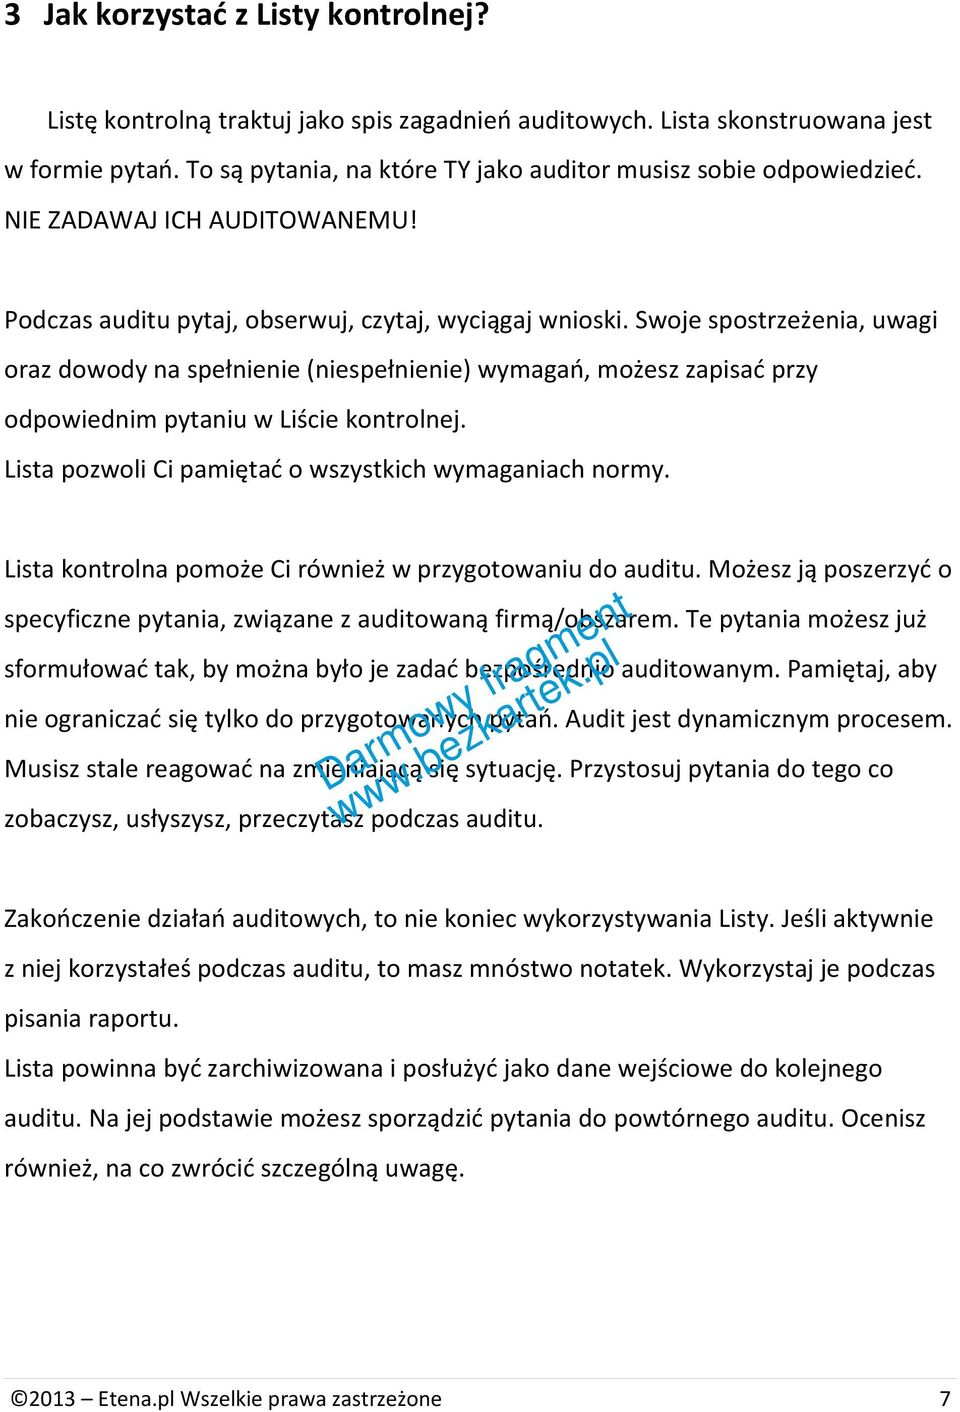 Lista kontrolna audit ISO 9001 Darmowy fragment - PDF Darmowe pobieranie